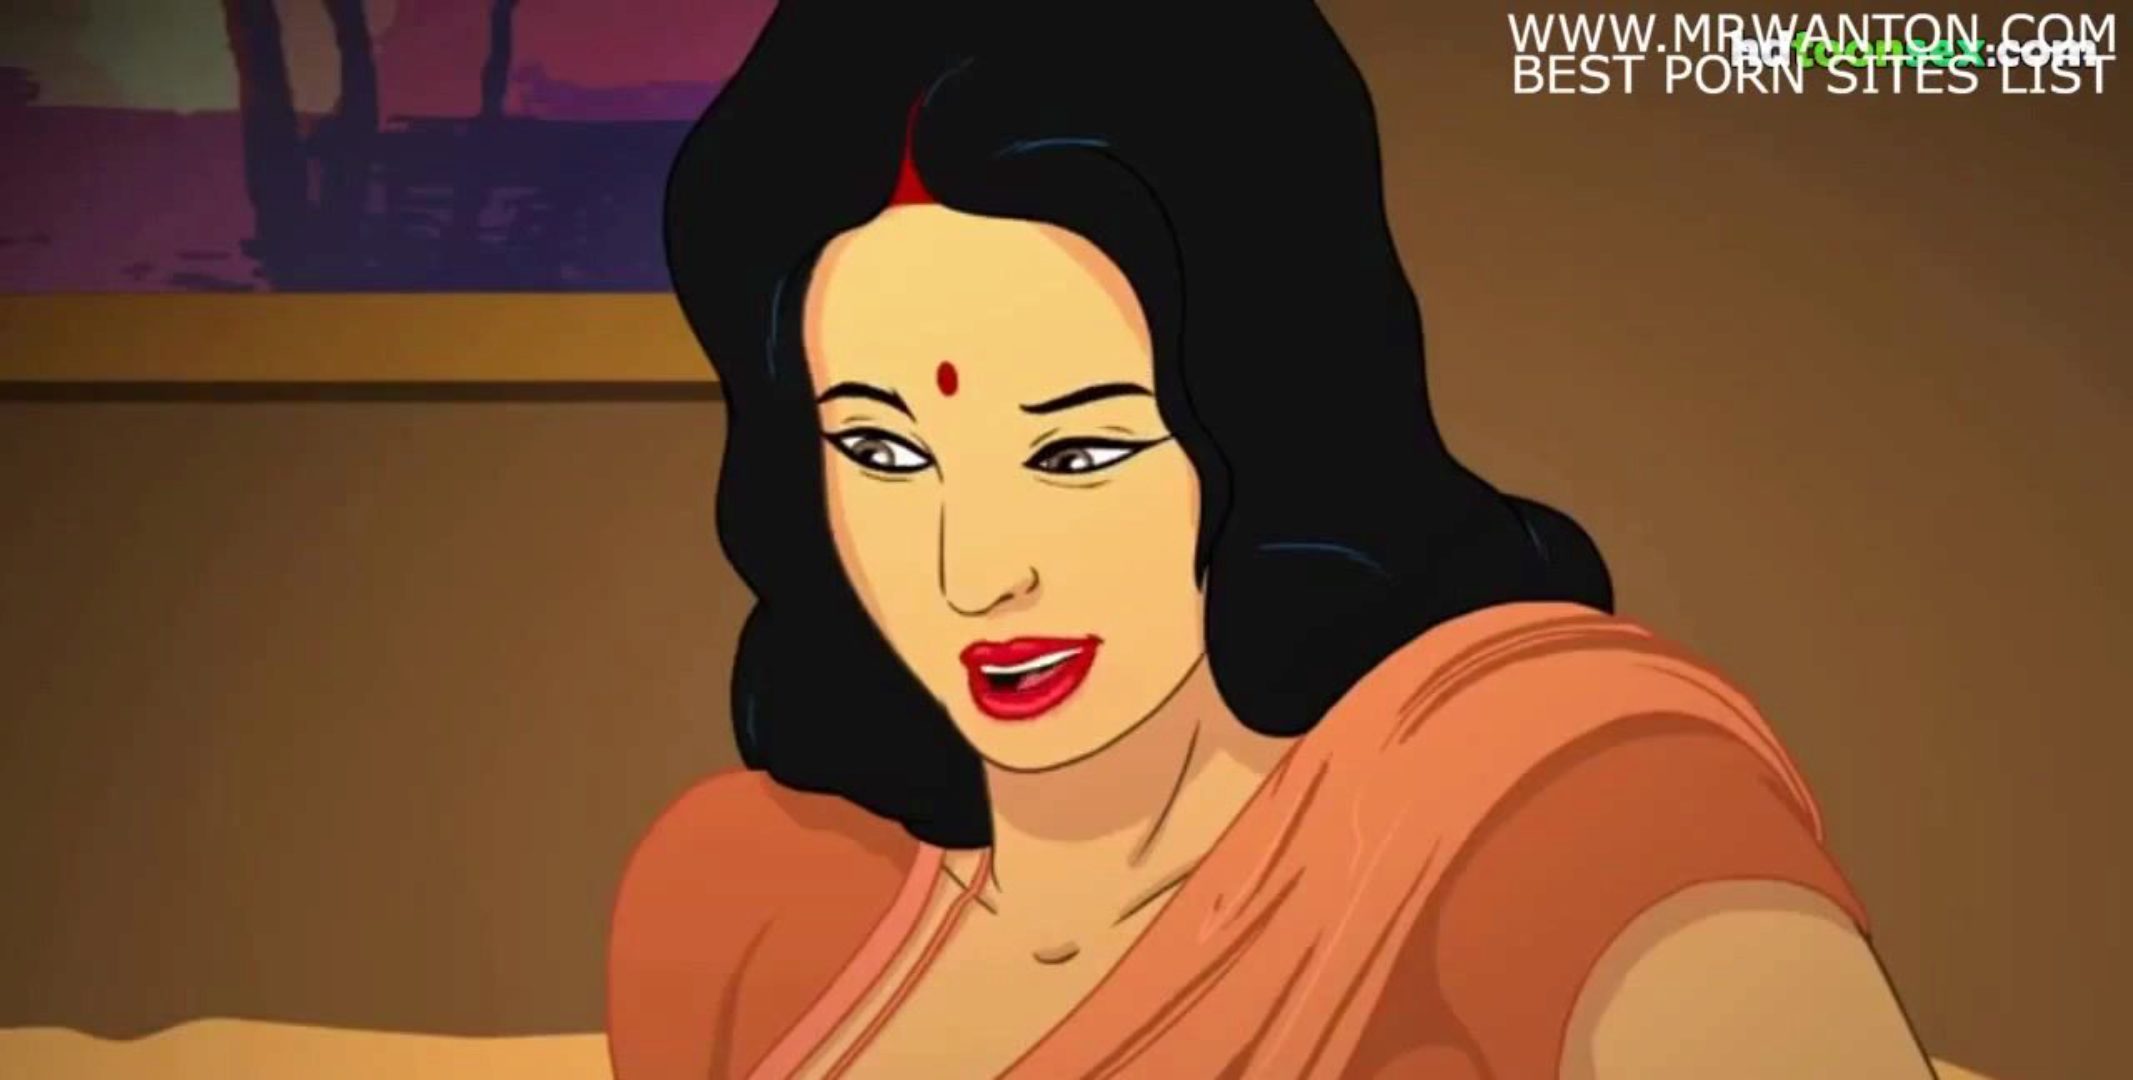 Sexy Video Com Sexy Video Com - Indian Sexy Video Download Free Language Hindi - XVDS TV